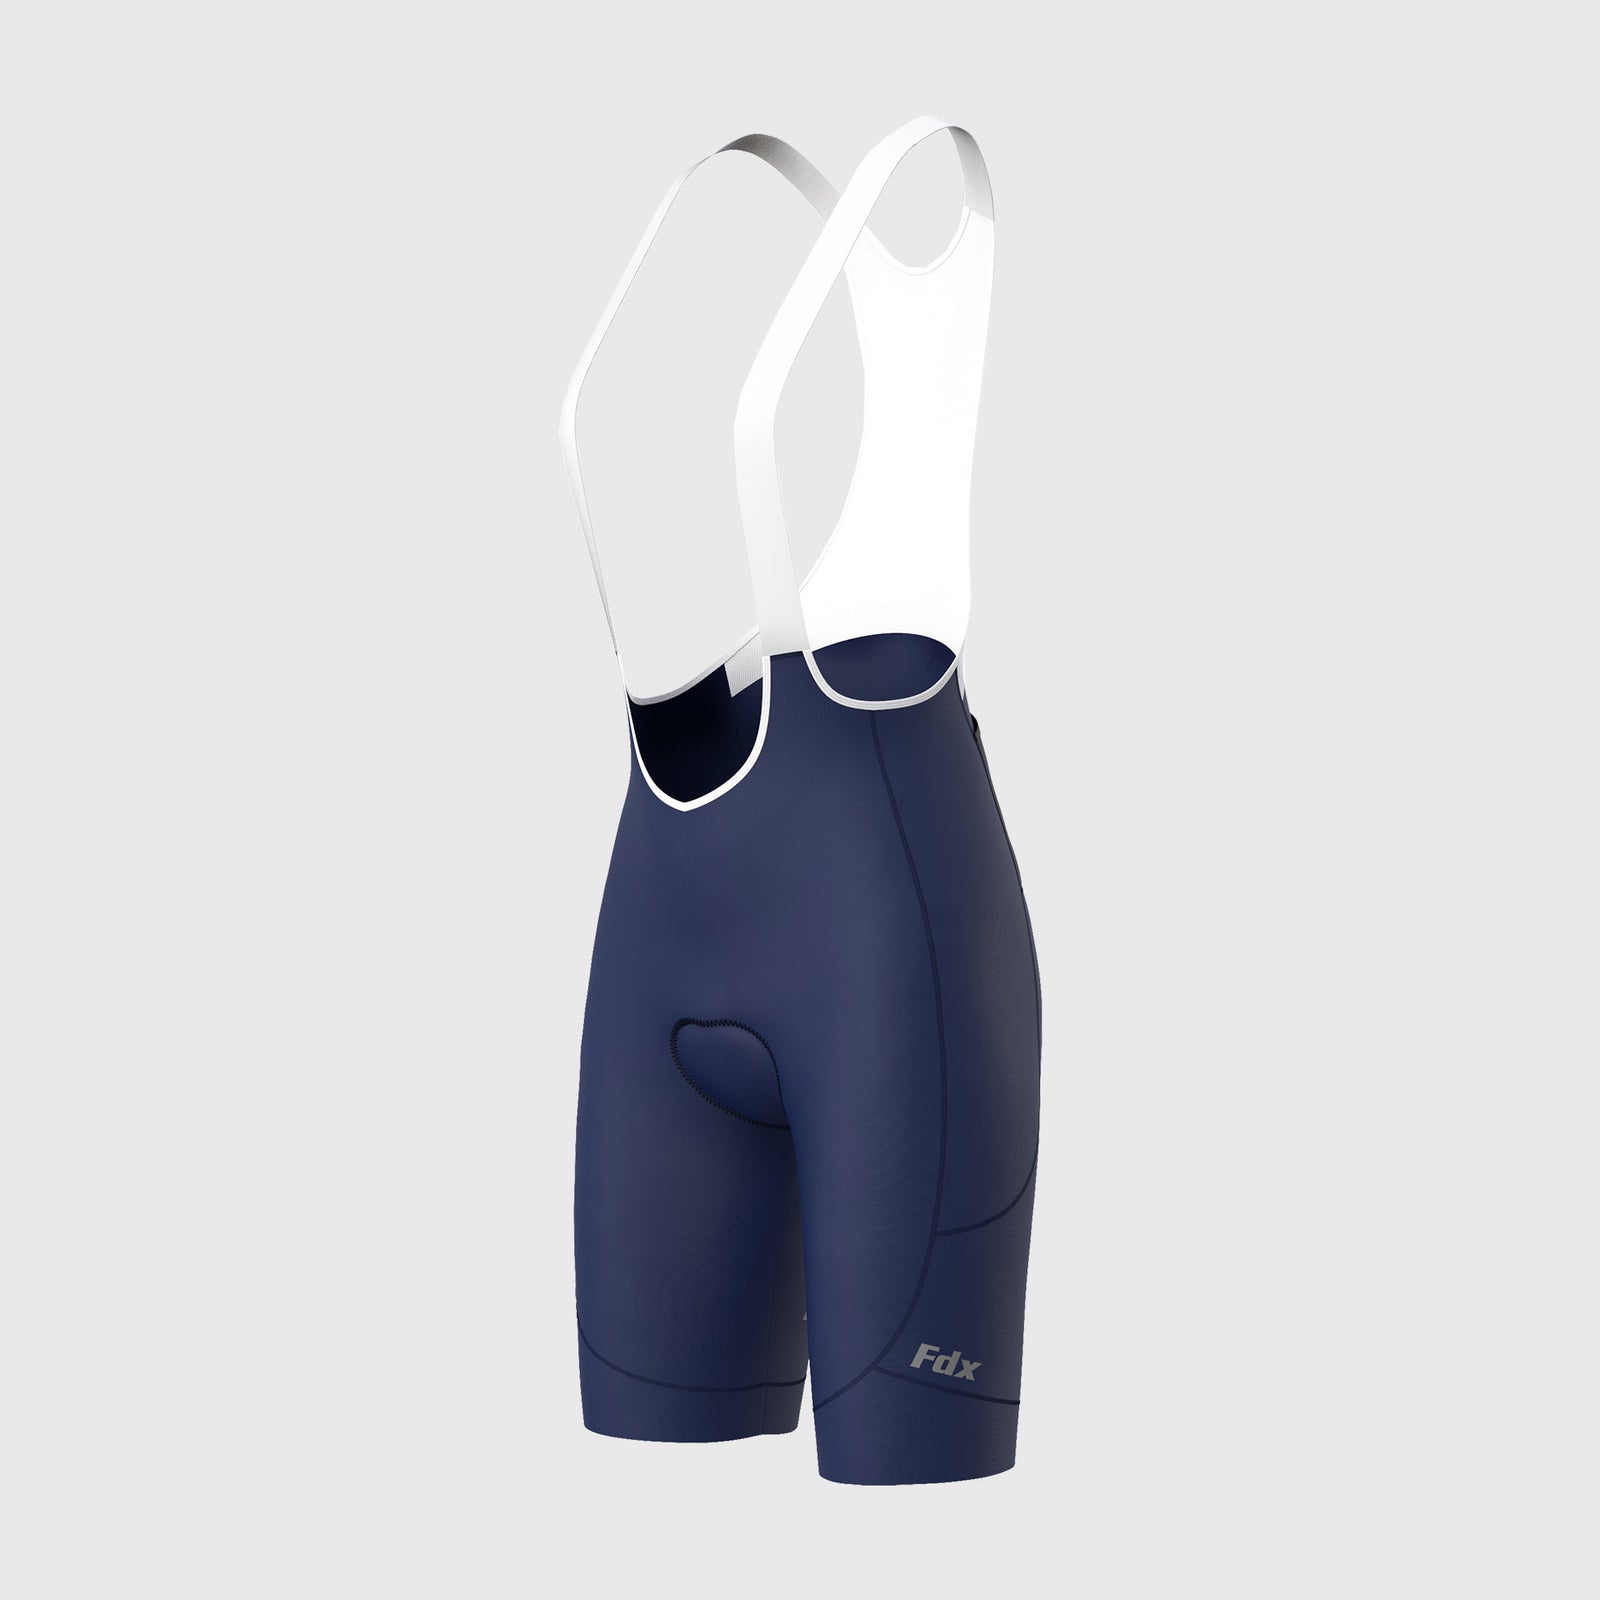 Fdx Duo Blue Women's Padded Summer Cycling Cargo Bib Shorts